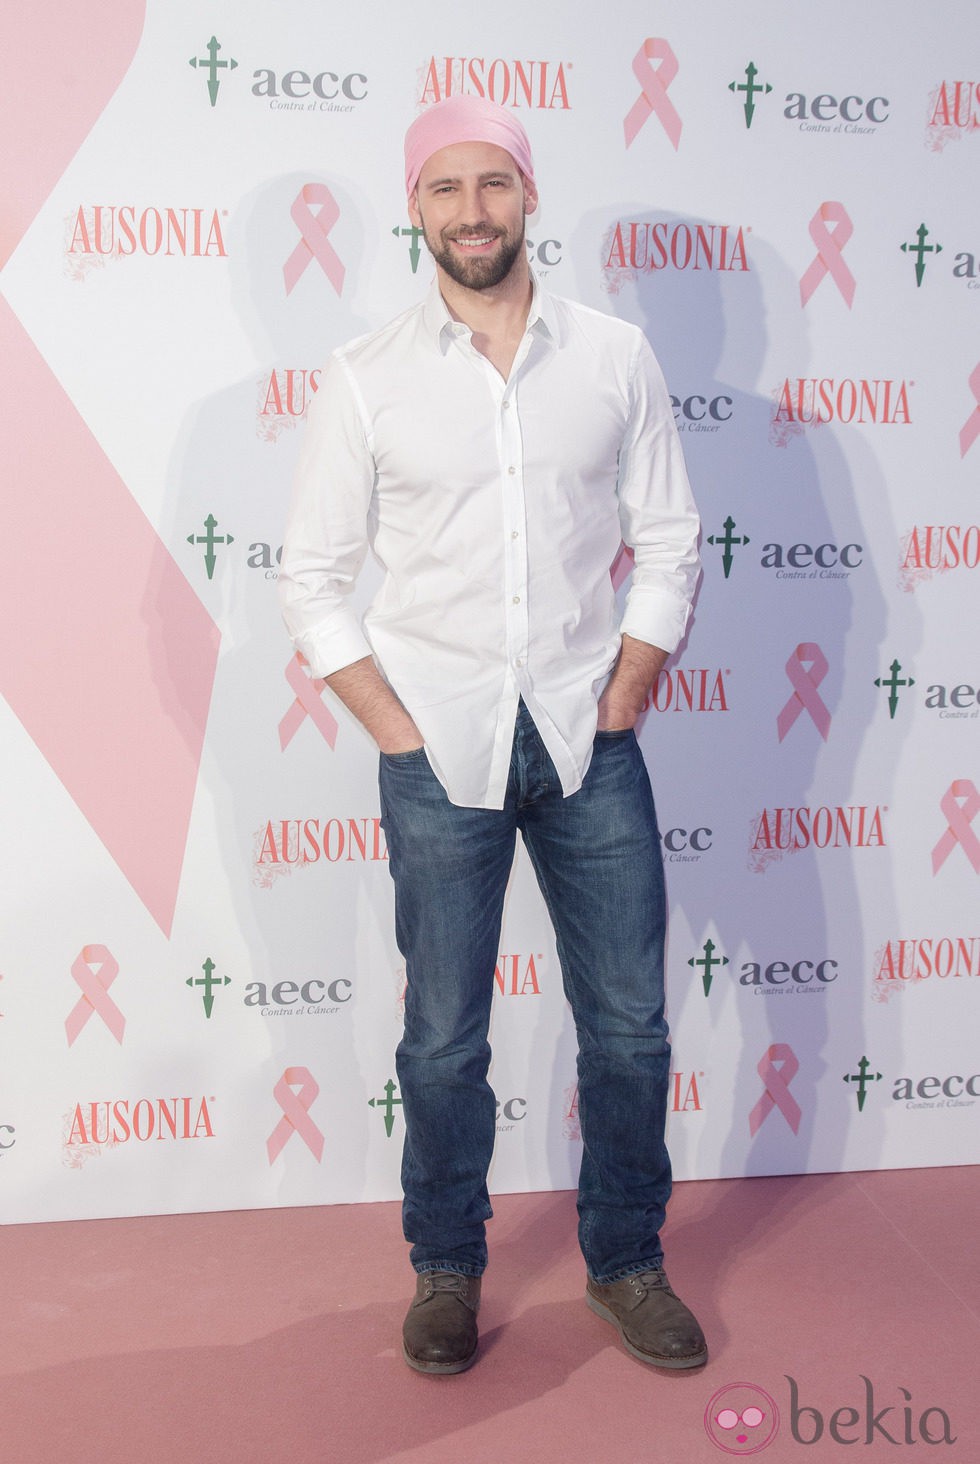 Gonzalo Miró en la campaña de lucha contra el cáncer de mama 2014